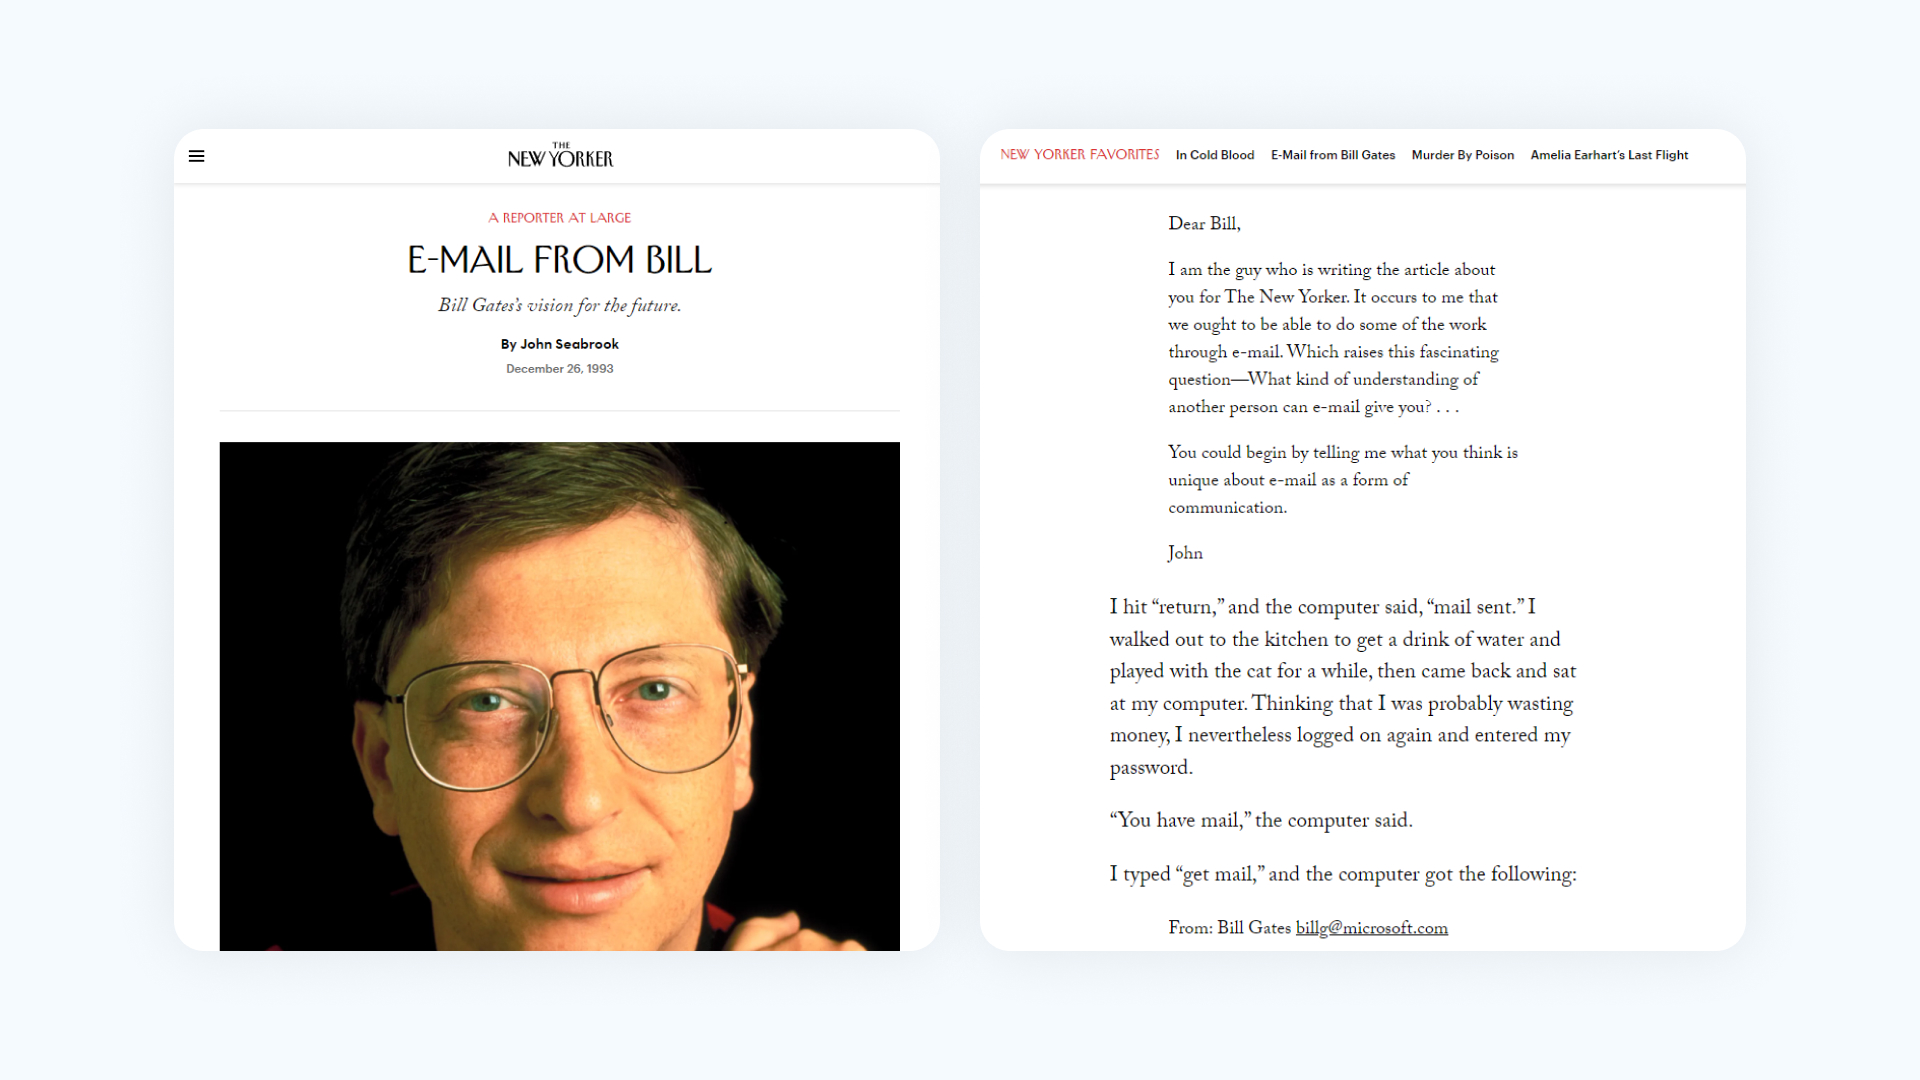 Репортер использовал почту, чтобы взять интервью у Билла Гейтса и обсудить будущее технологий (1994  